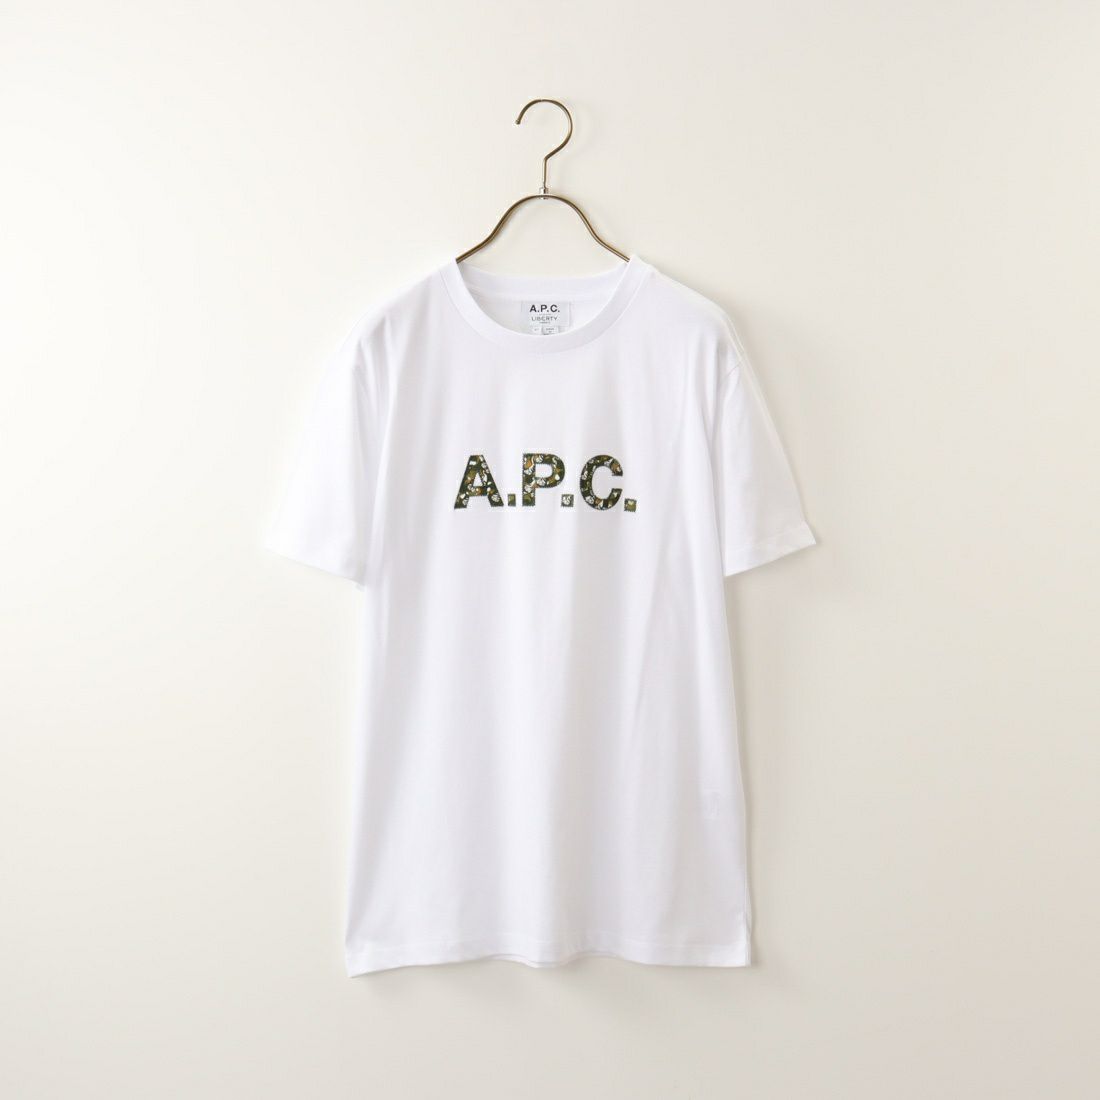 A.P.C. [アー・ペー・セー] カモフラージュロゴTシャツ [T-SHIRT-CAMO]